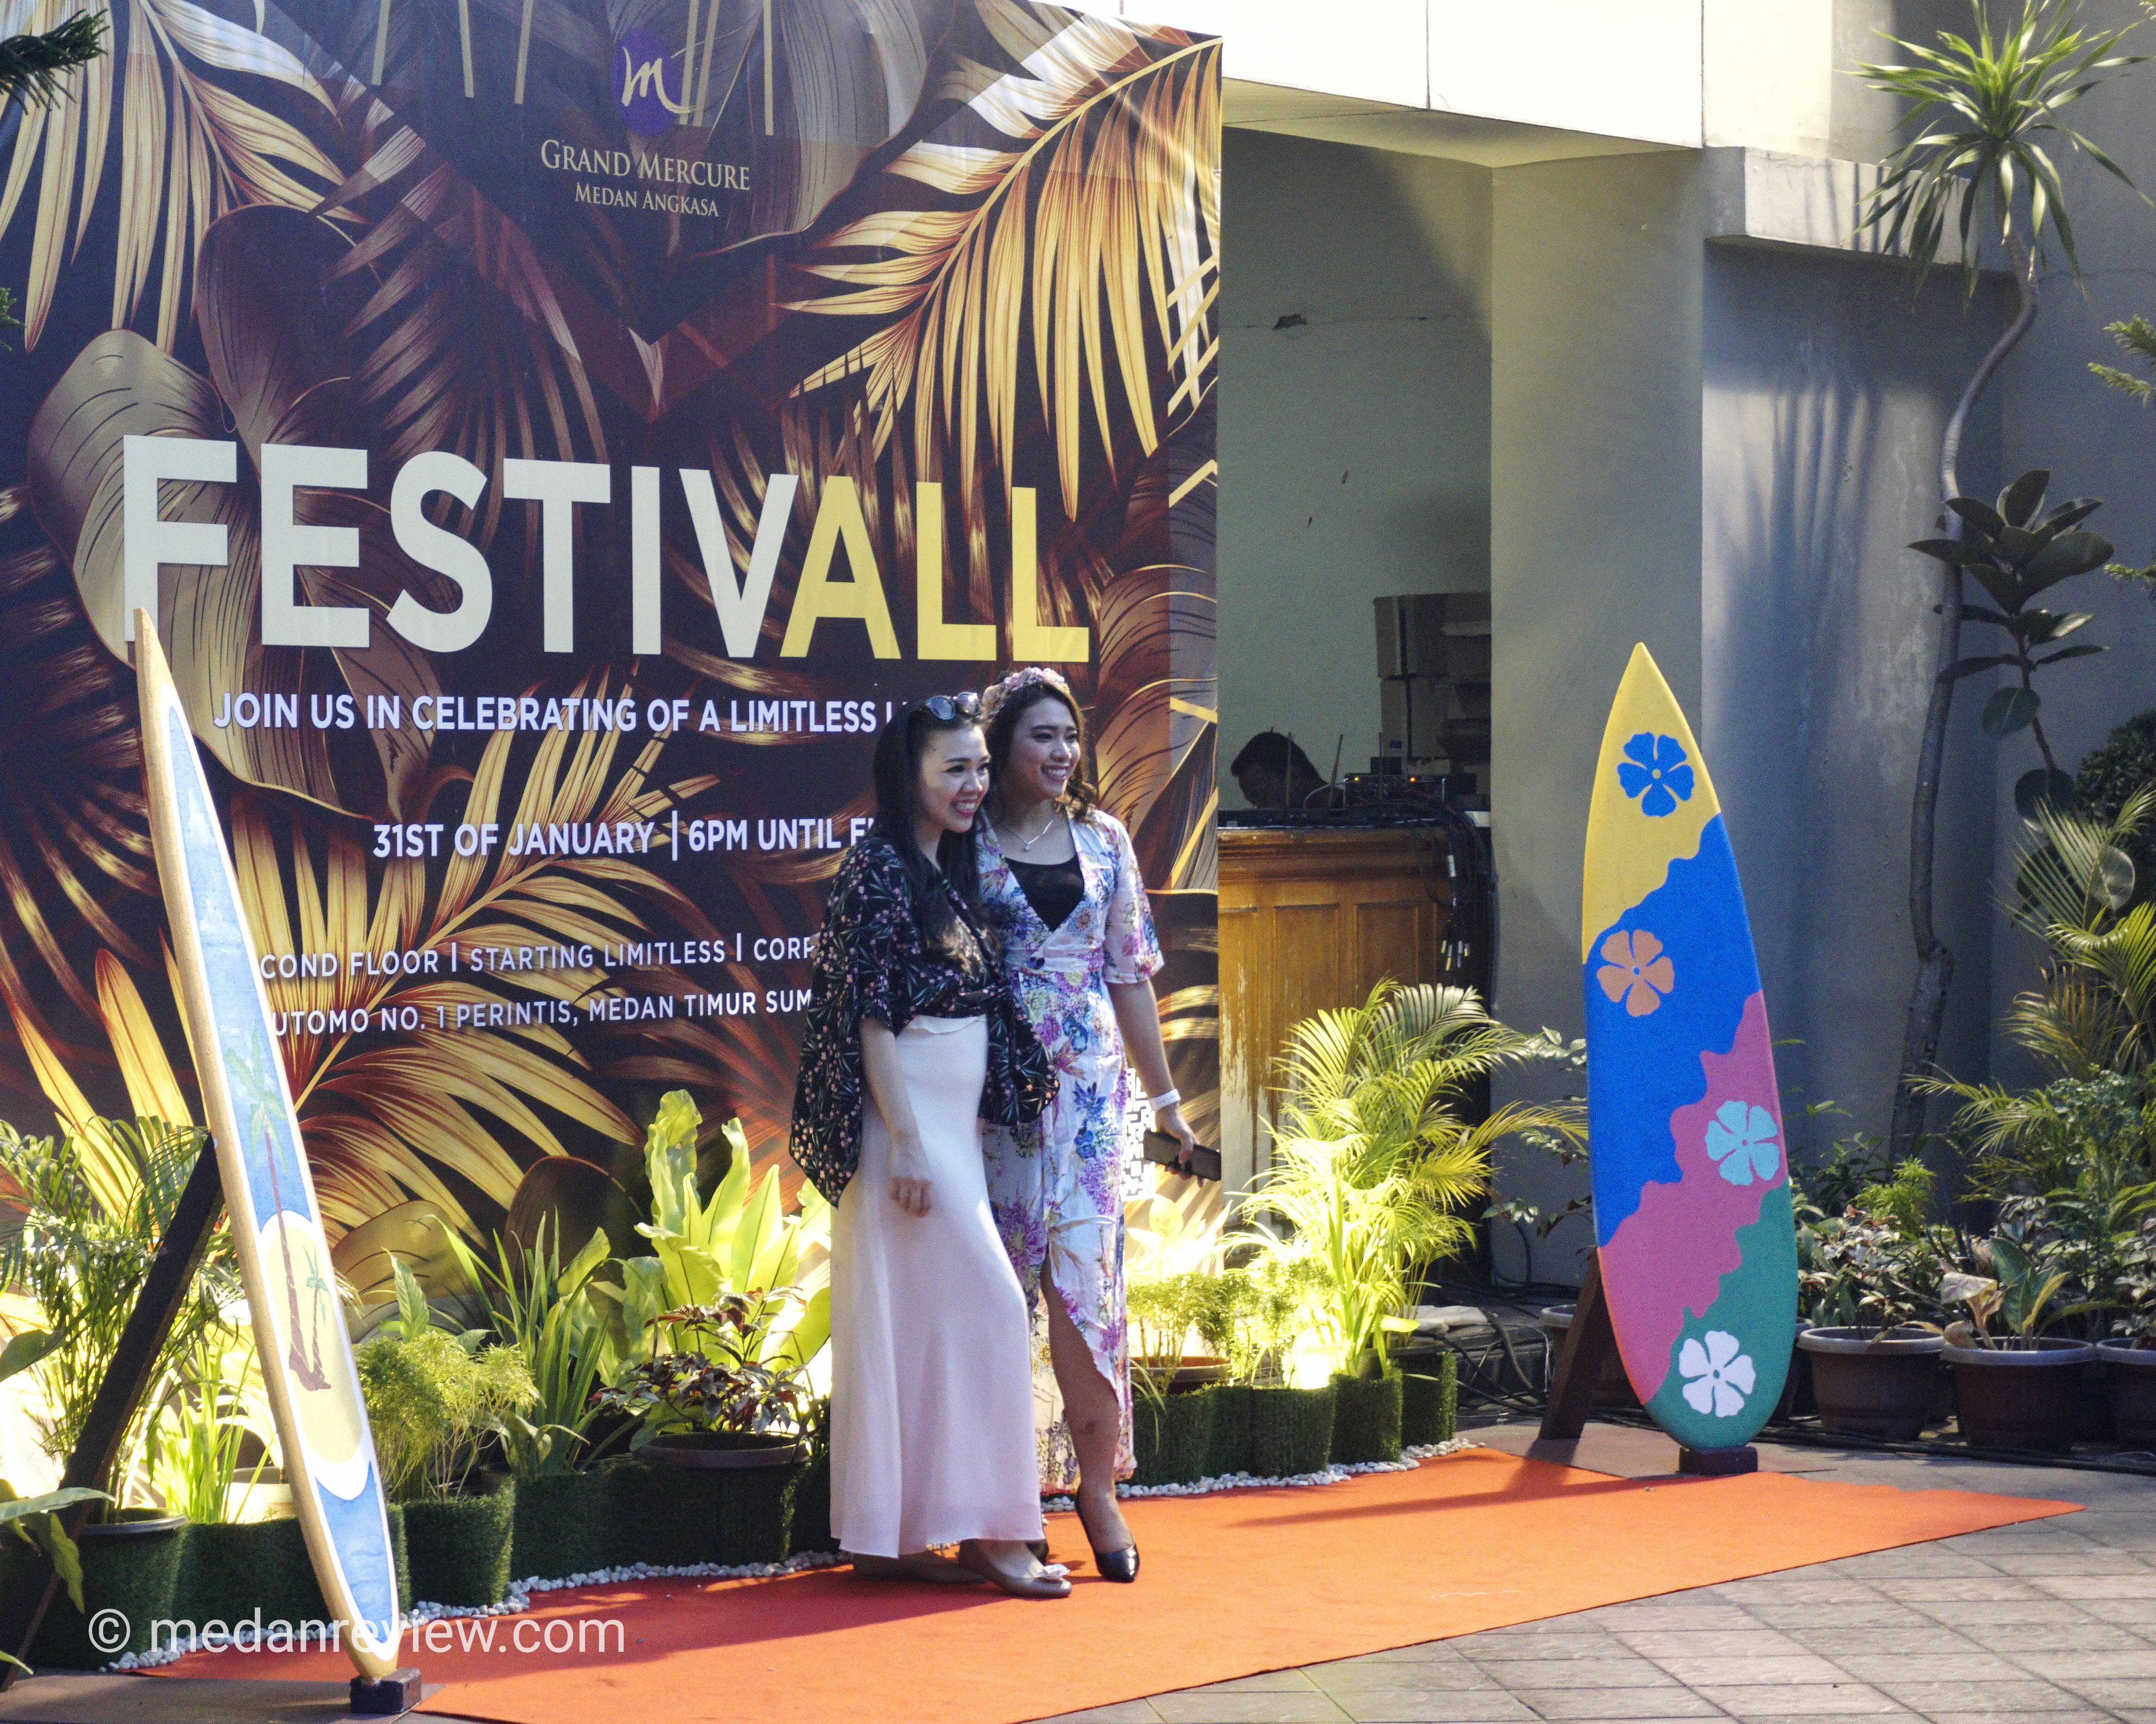 FestivALL - Grand Mercure Medan Angkasa Pererat Silahturahmi Dengan Member, Accounts dan Media